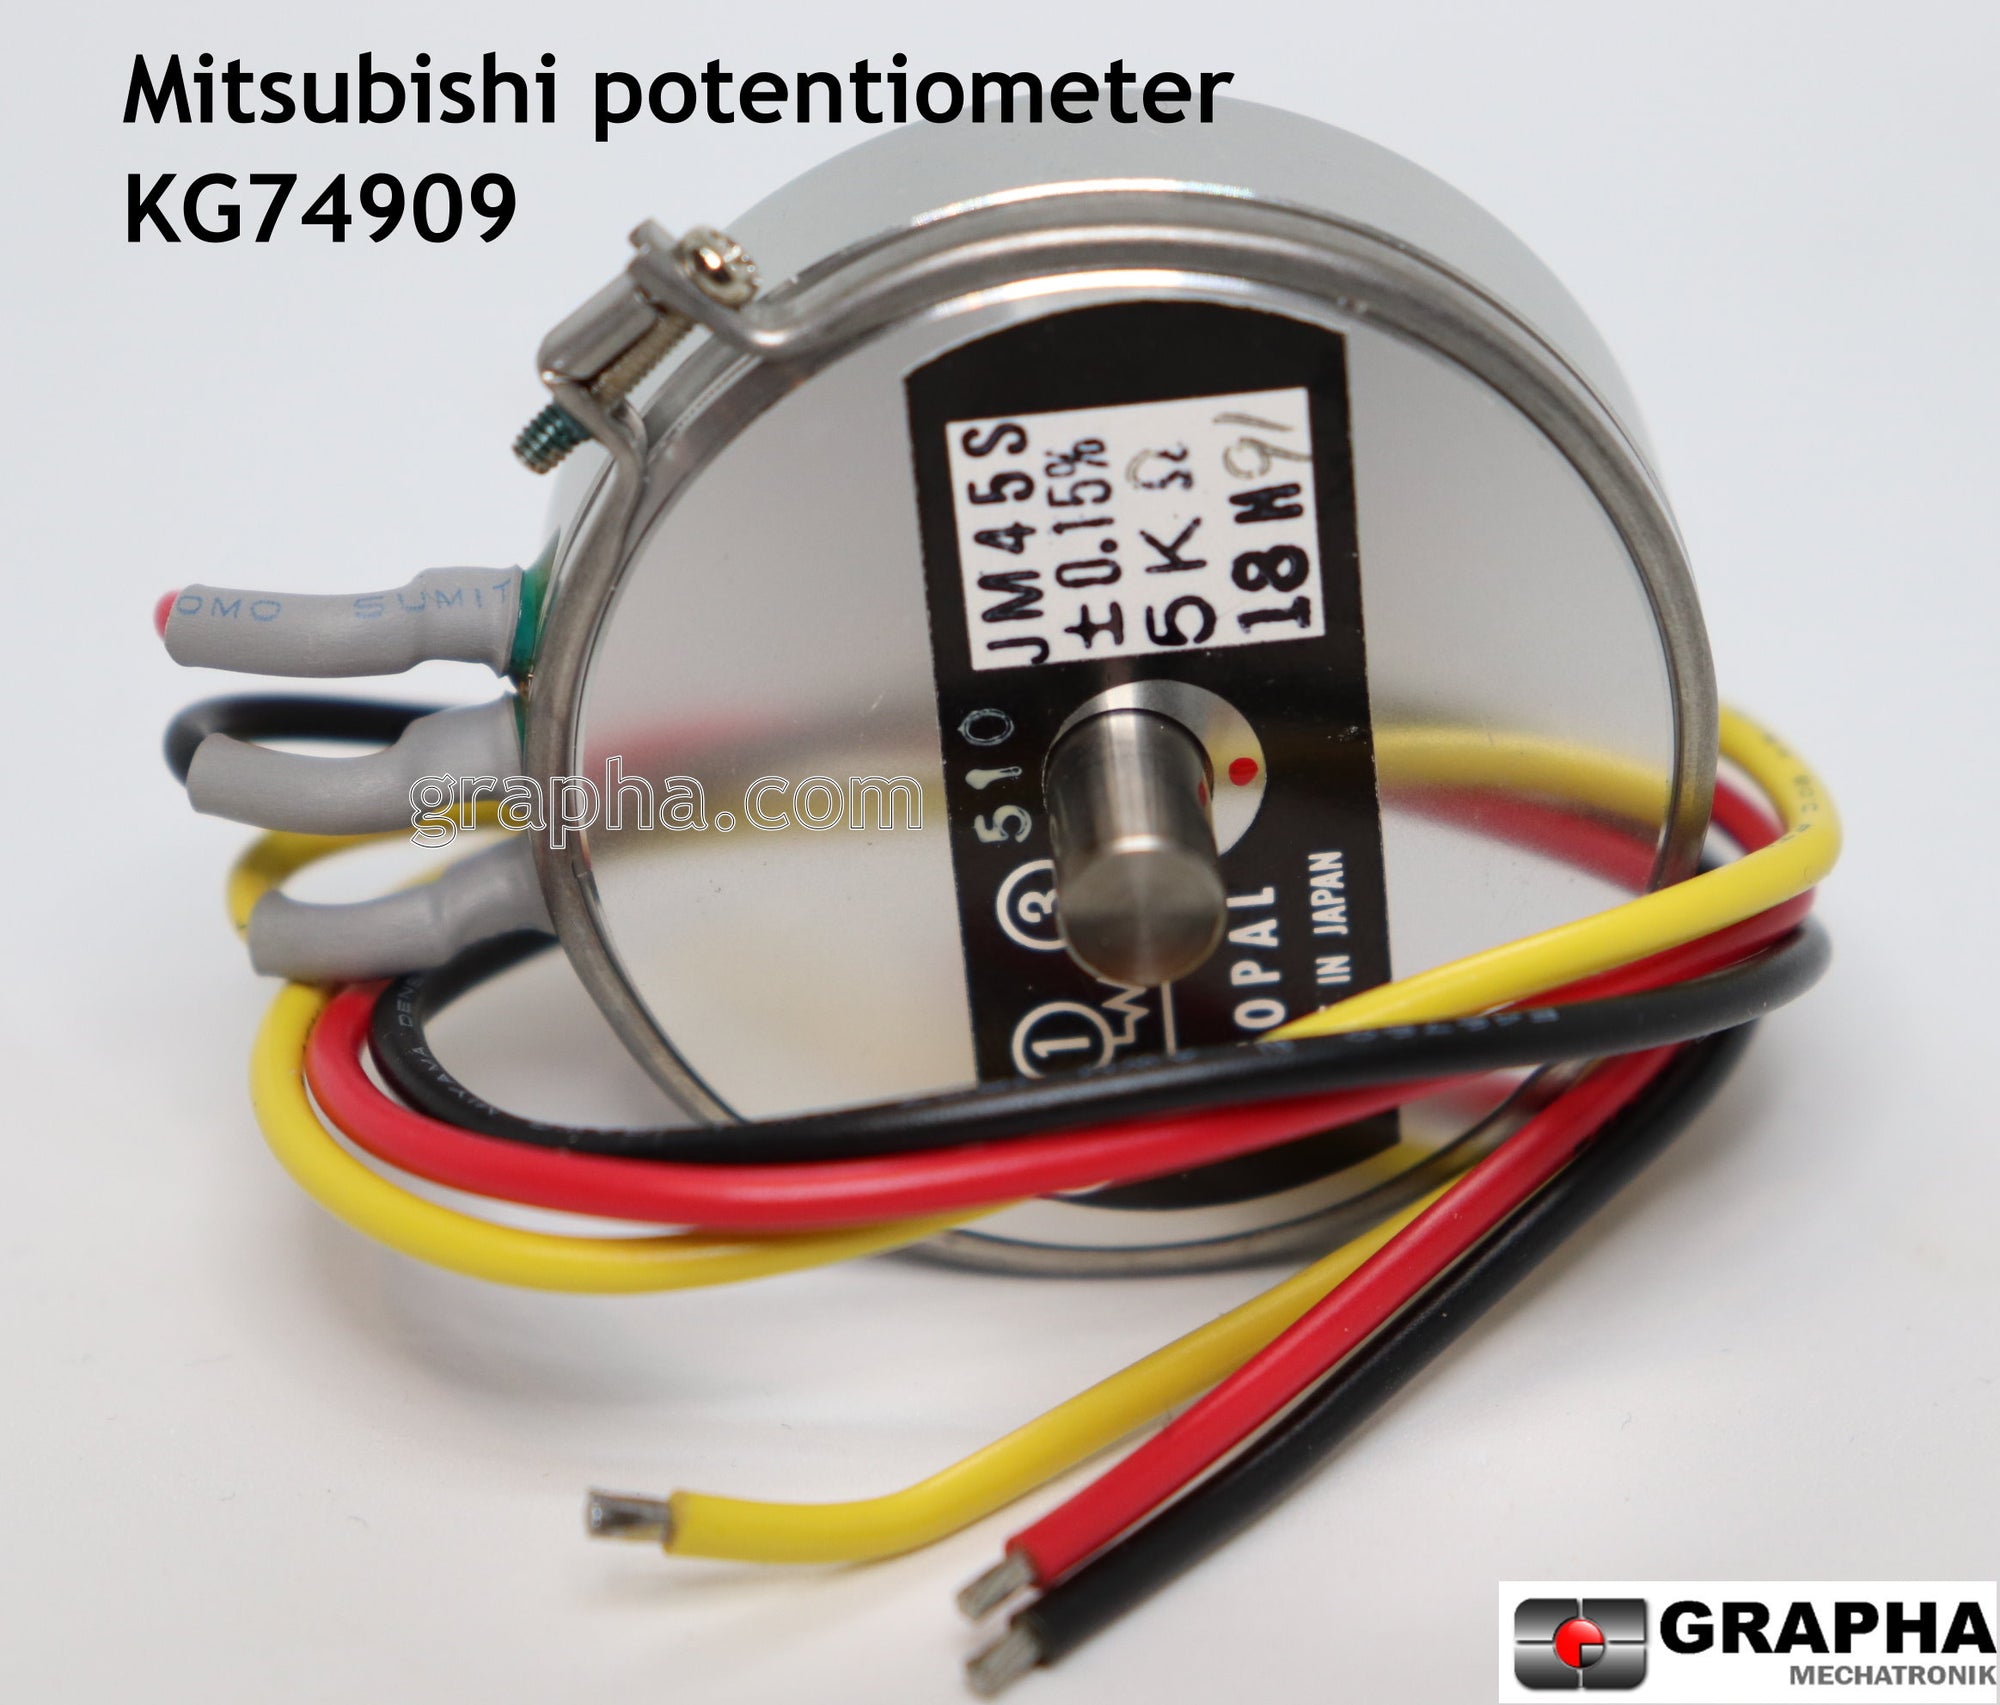 Mitsubishi potentiometer KG74909